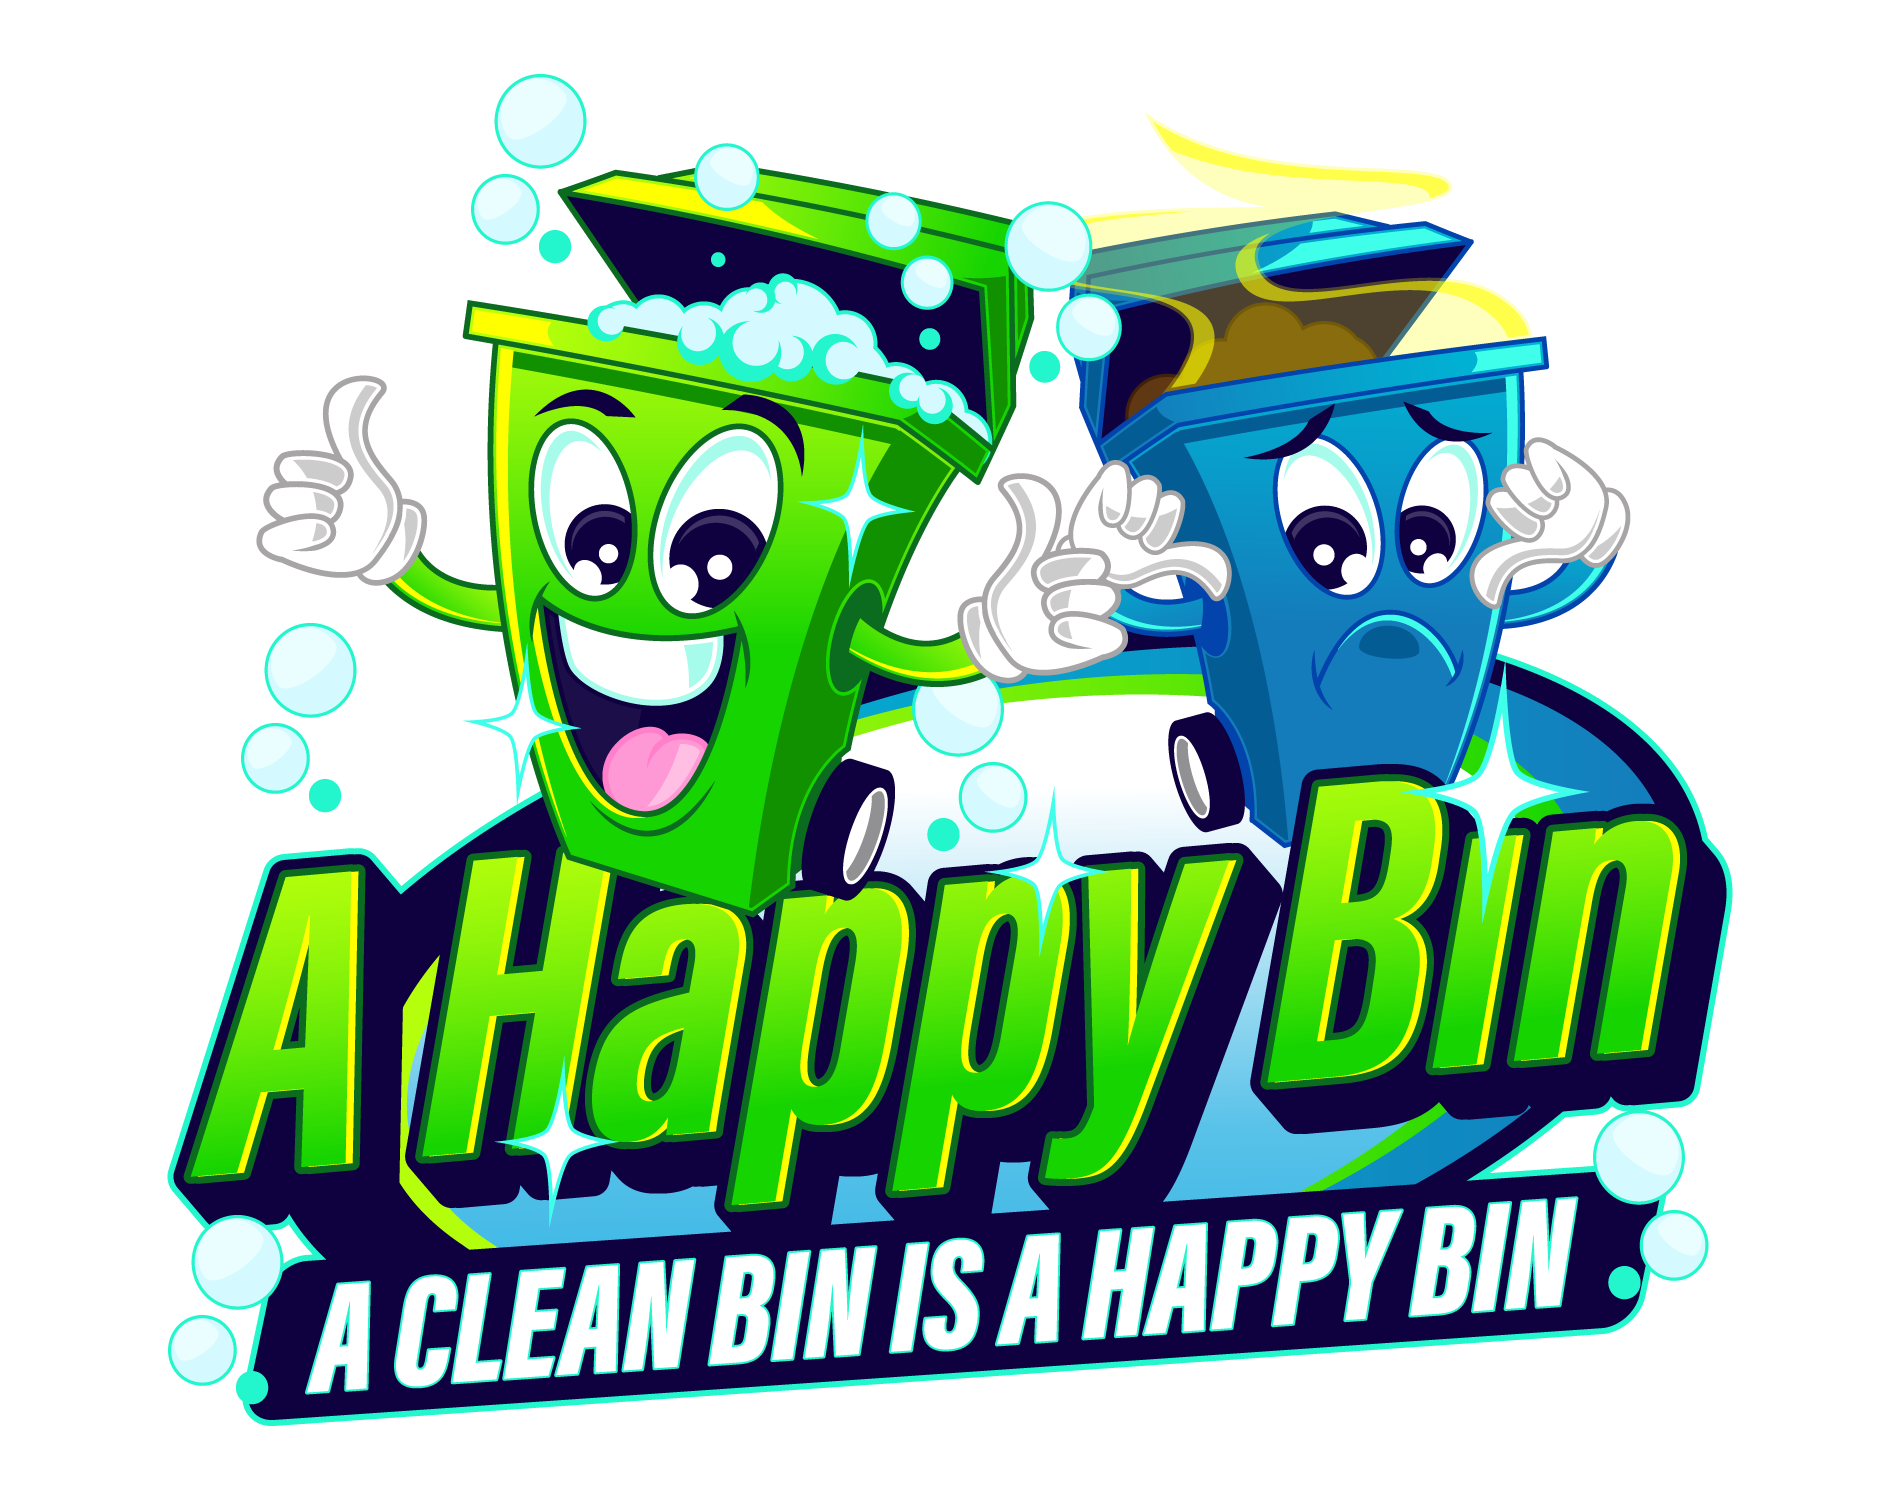 A Happy Bin